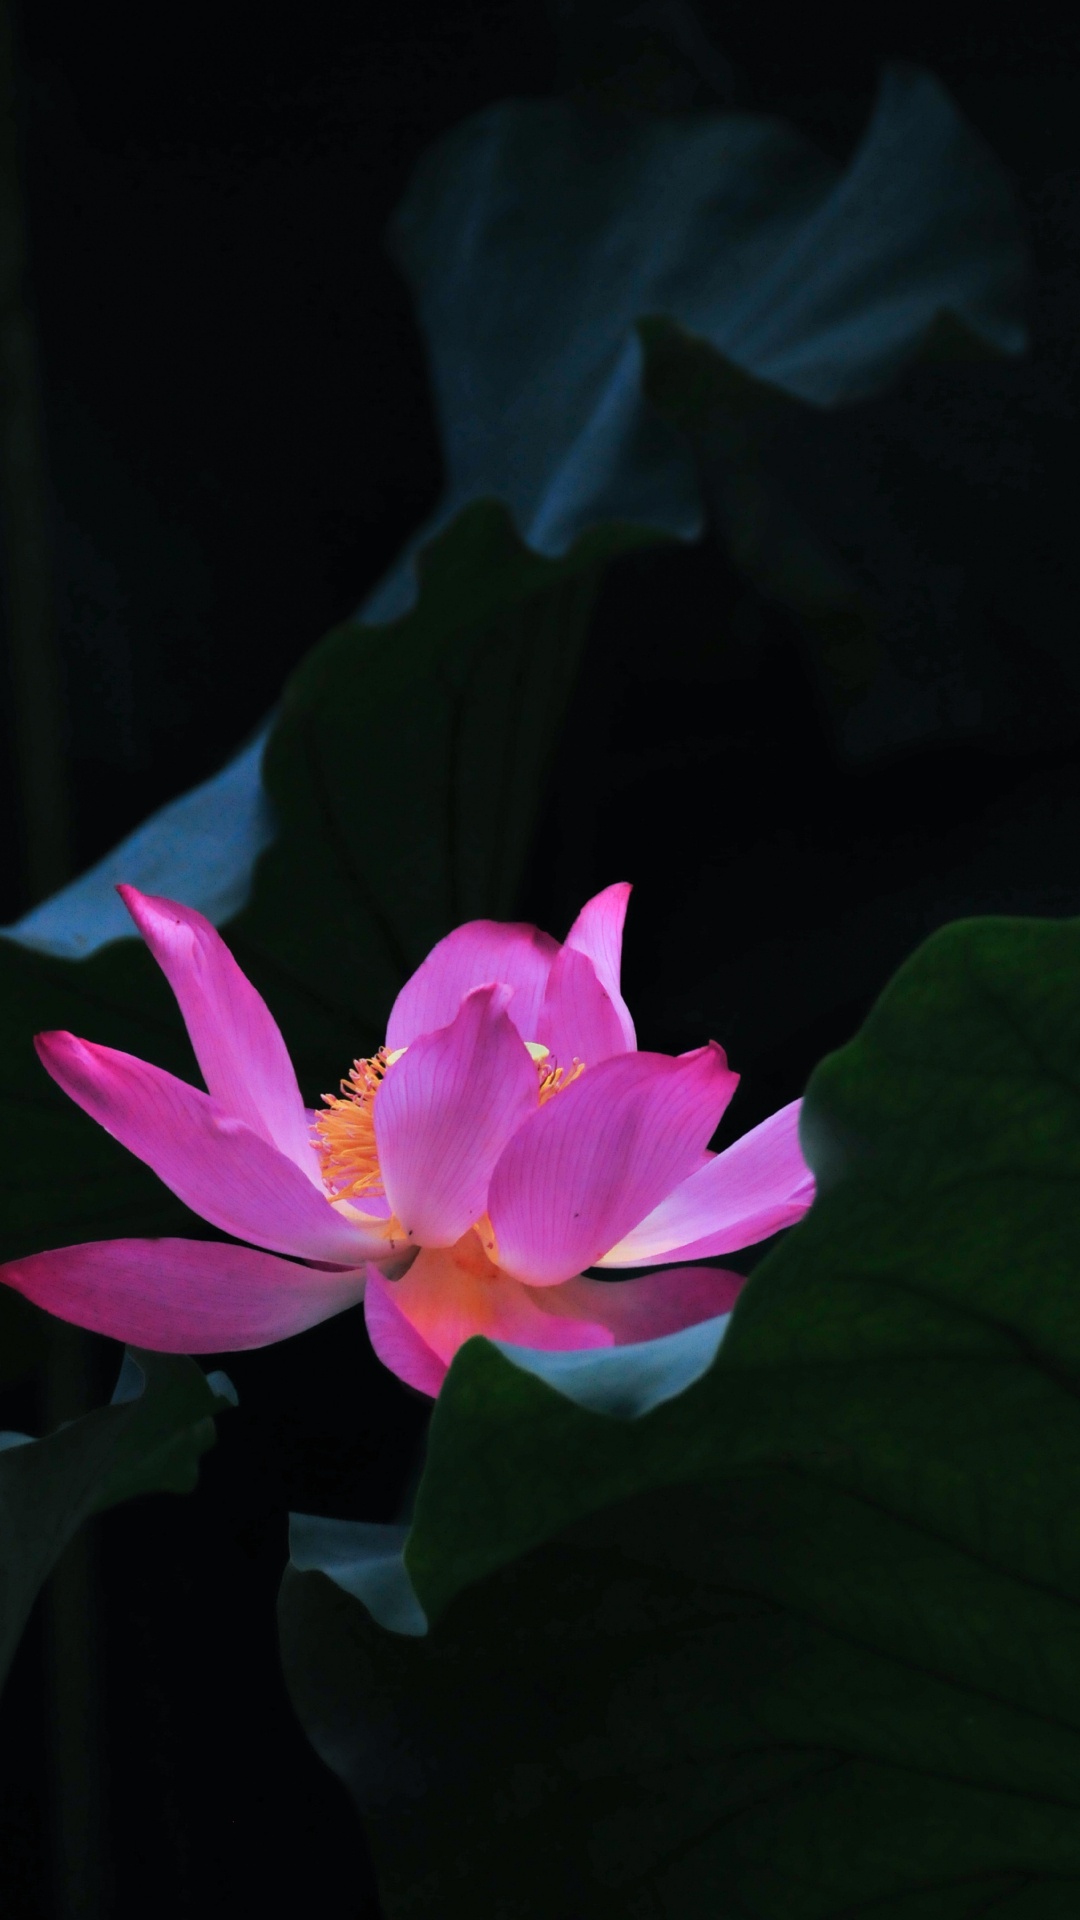 Pink Lotus Flower in Bloom. Wallpaper in 1080x1920 Resolution